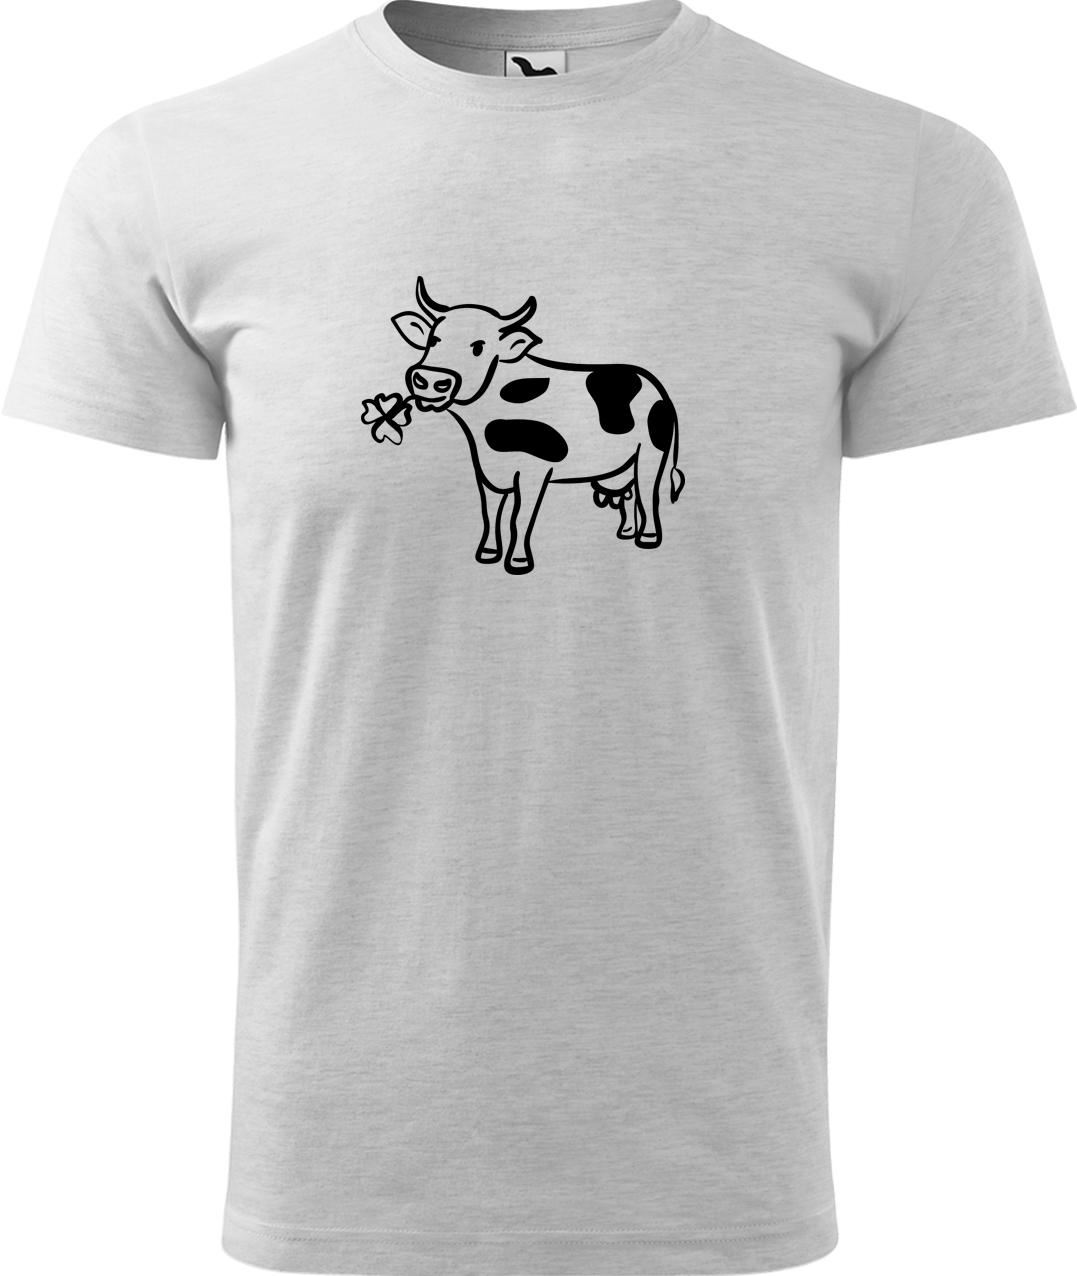 Pánské tričko s krávou - Kravička a jetel Velikost: L, Barva: Světle šedý melír (03), Střih: pánský